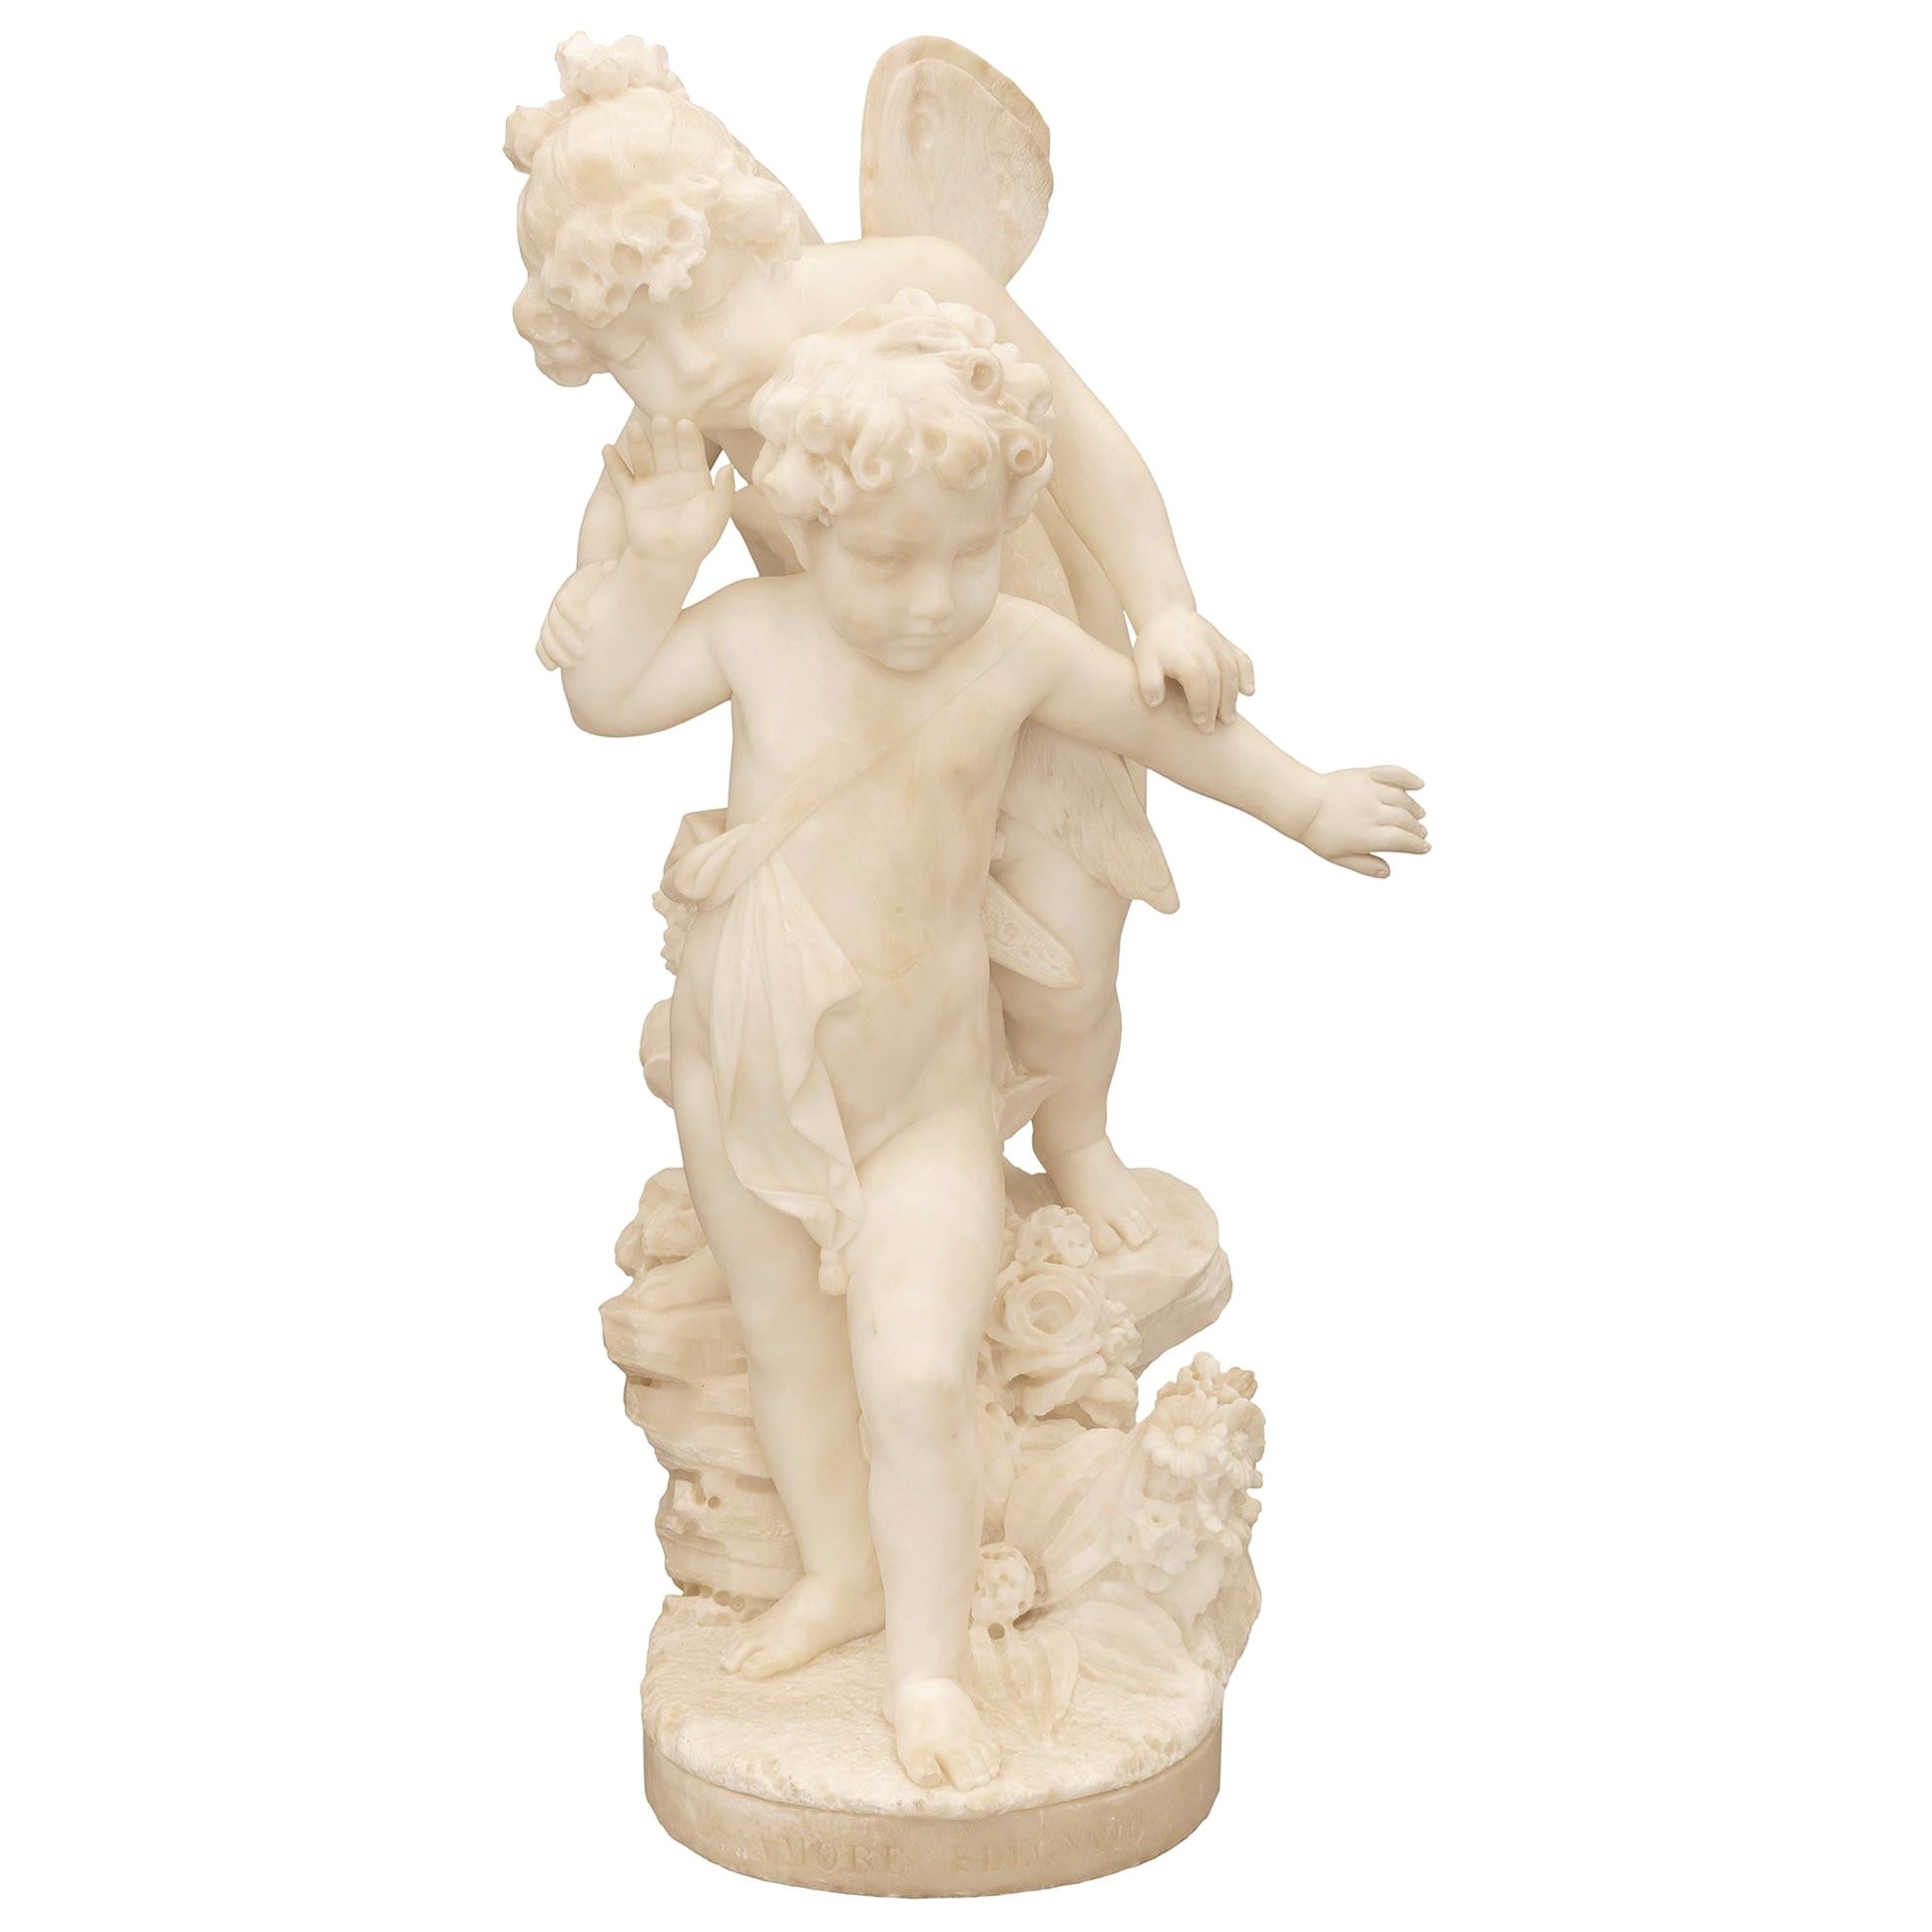 Italian 19th Century White Carrara Marble Statue Titled “Amore Sdegnato” For Sale